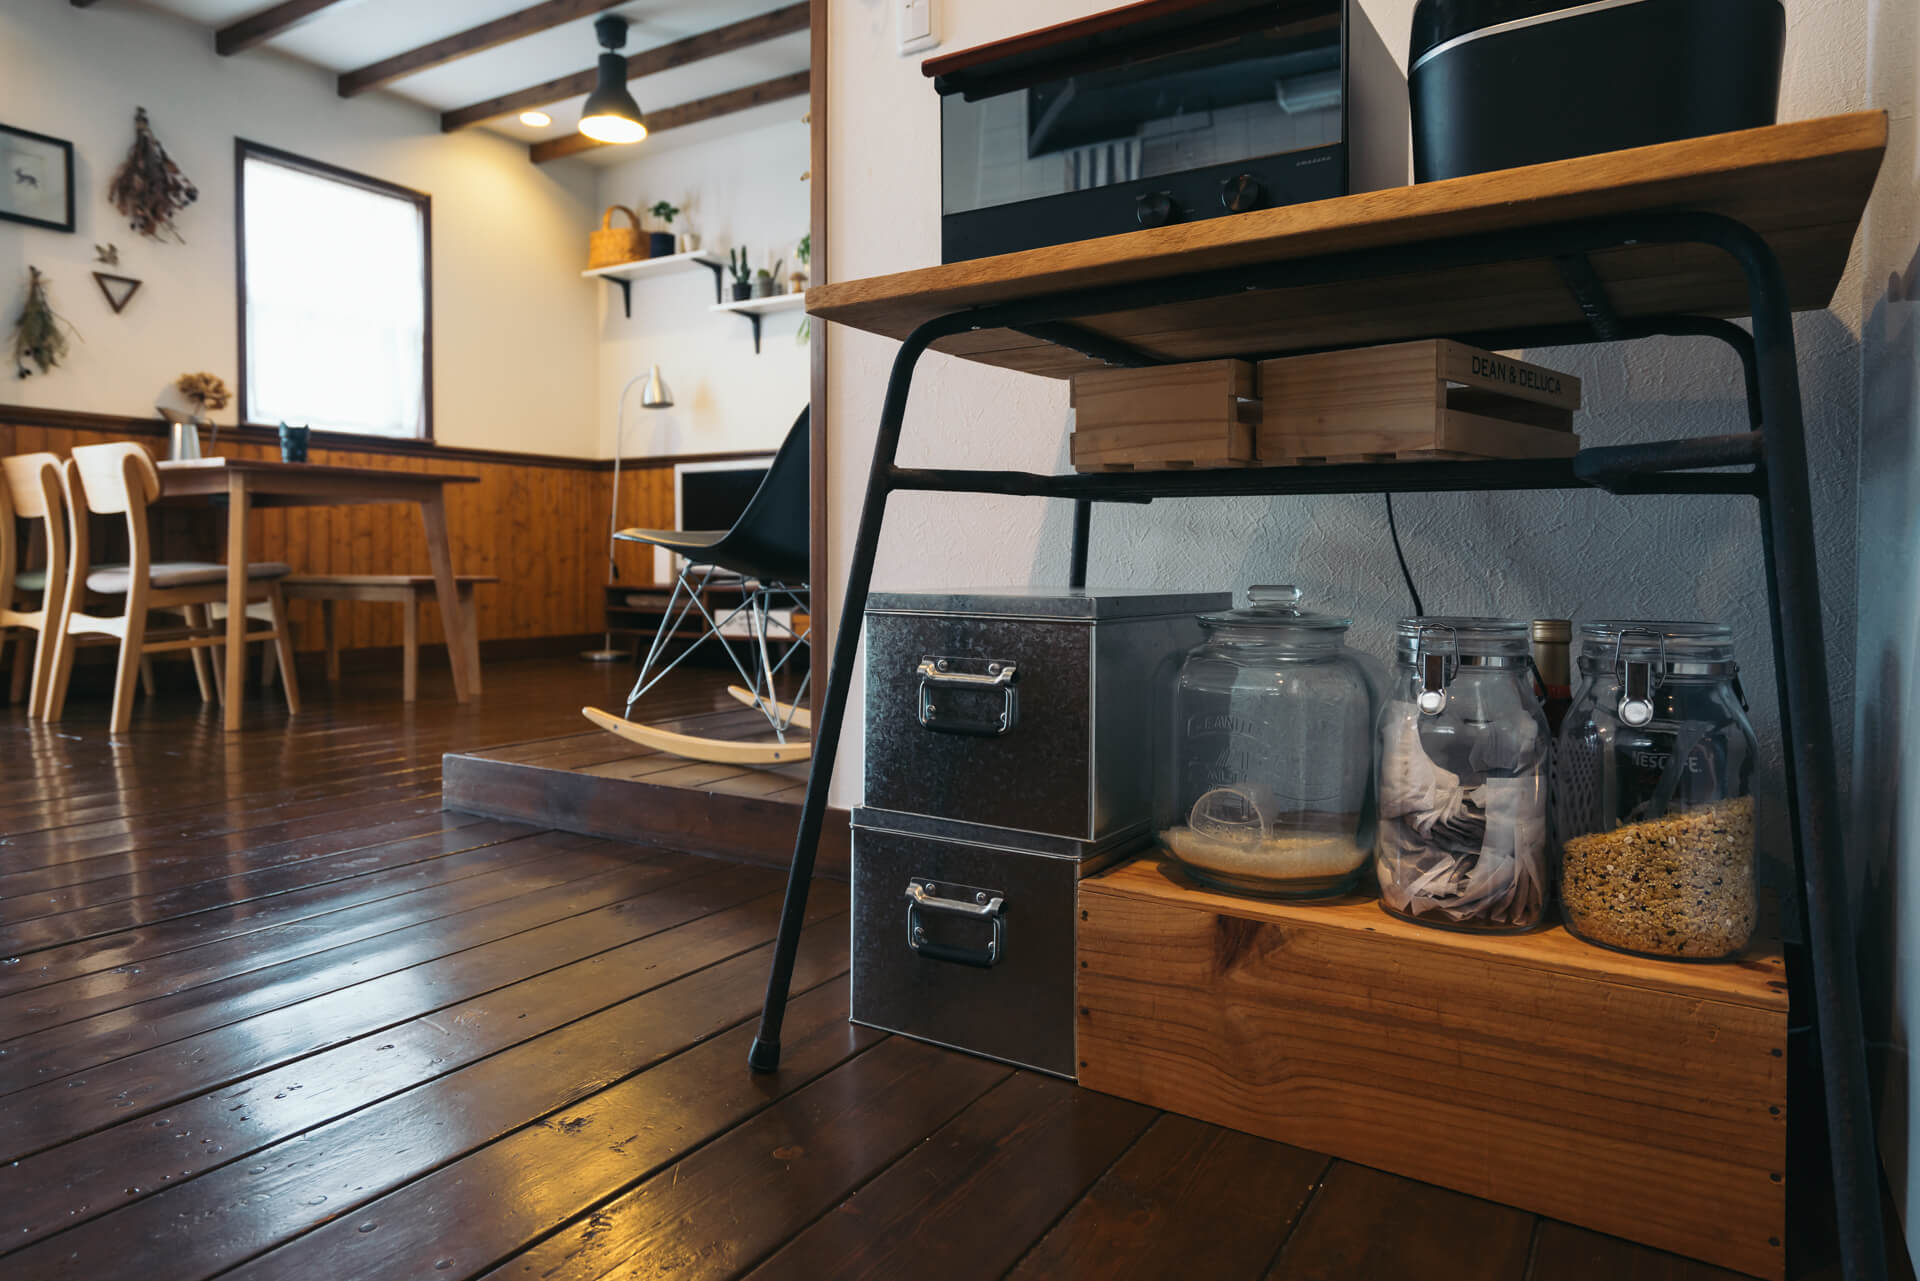 maimai さんのお部屋のキッチン収納は、古家具店で購入したテーブル。トタンボックス、クッキージャーなどにセンス良く収まります